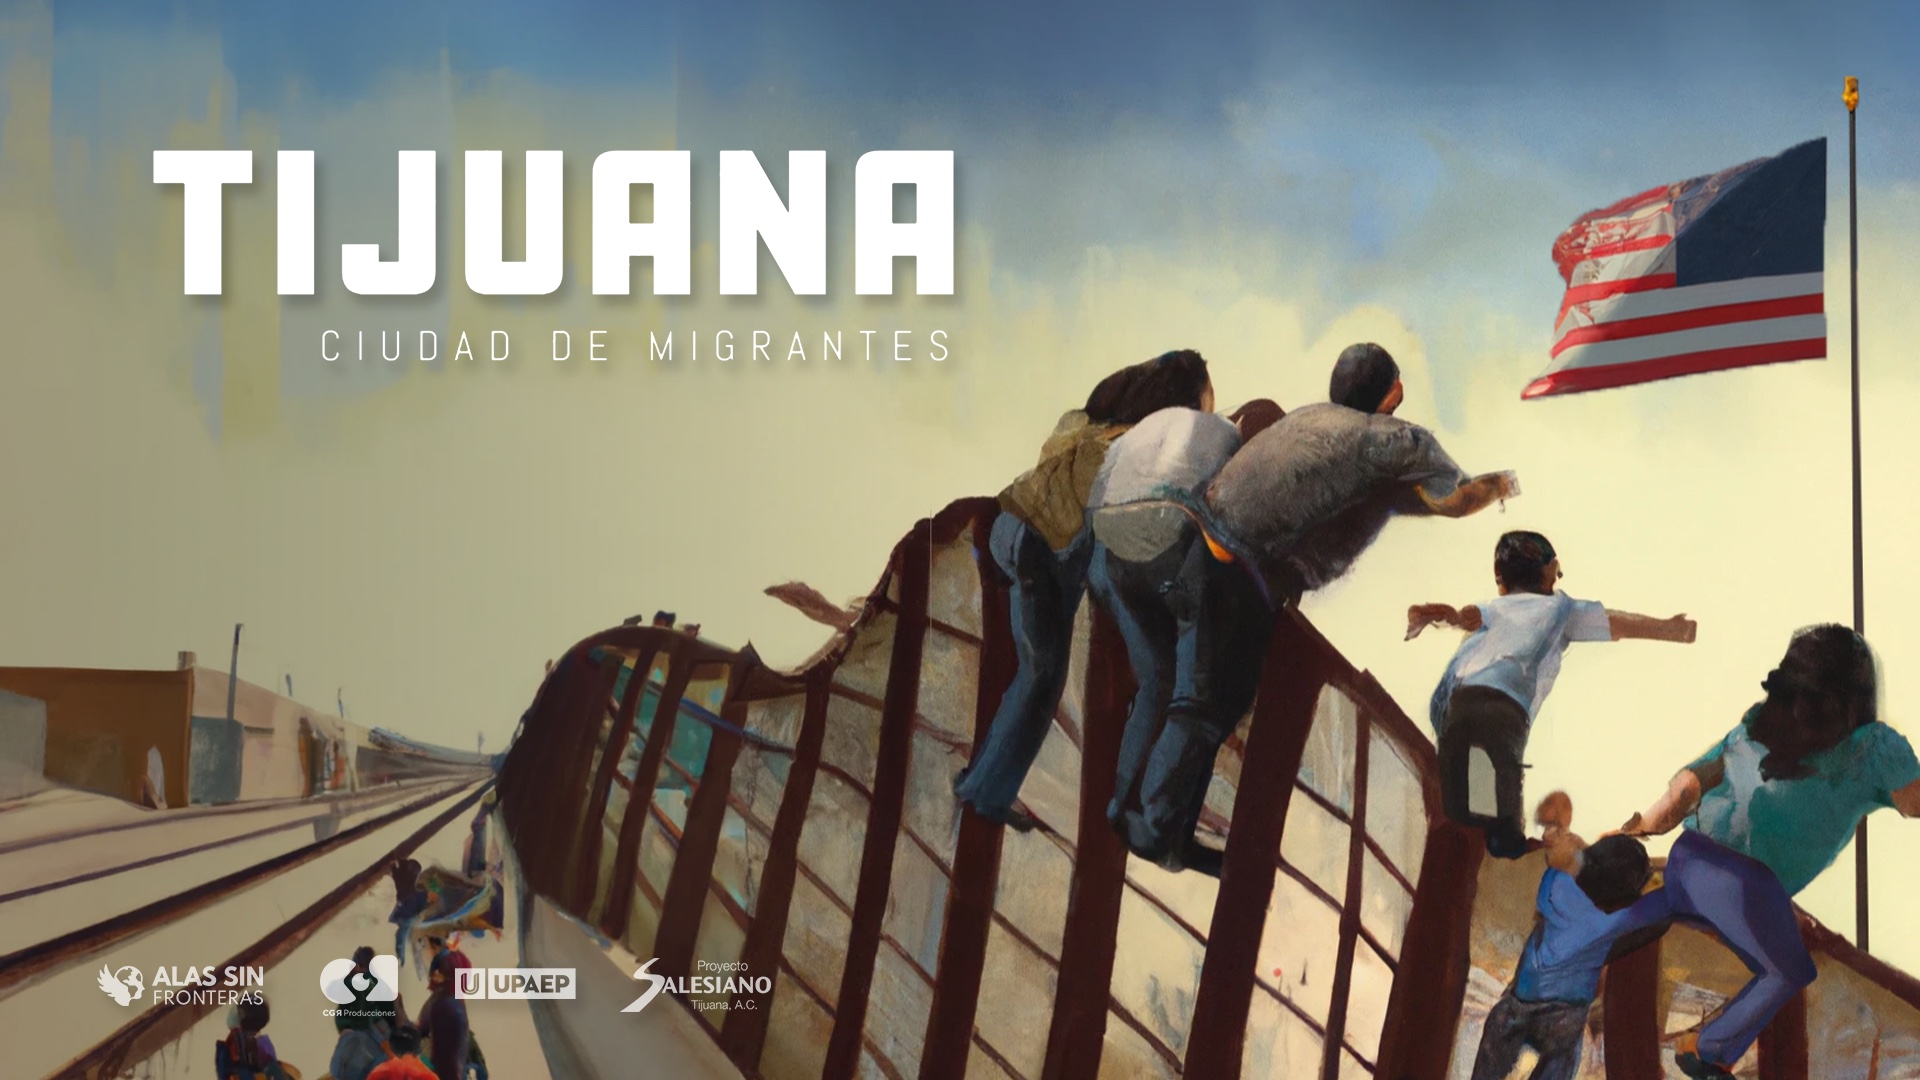 Tijuana: Ciudad de Migrantes